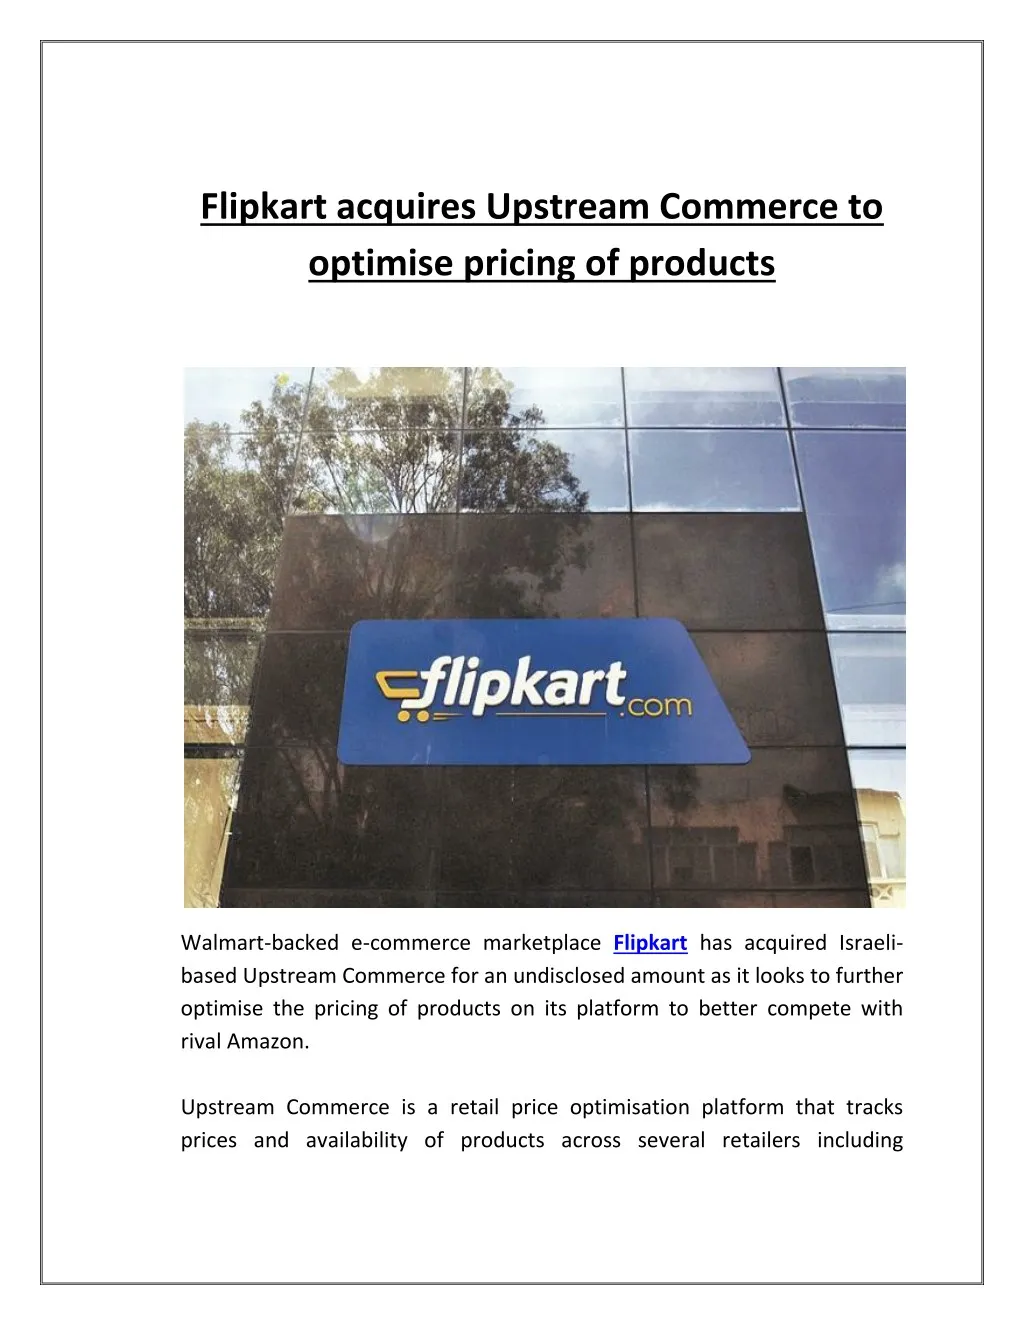 flipkart acquires upstream commerce to optimise